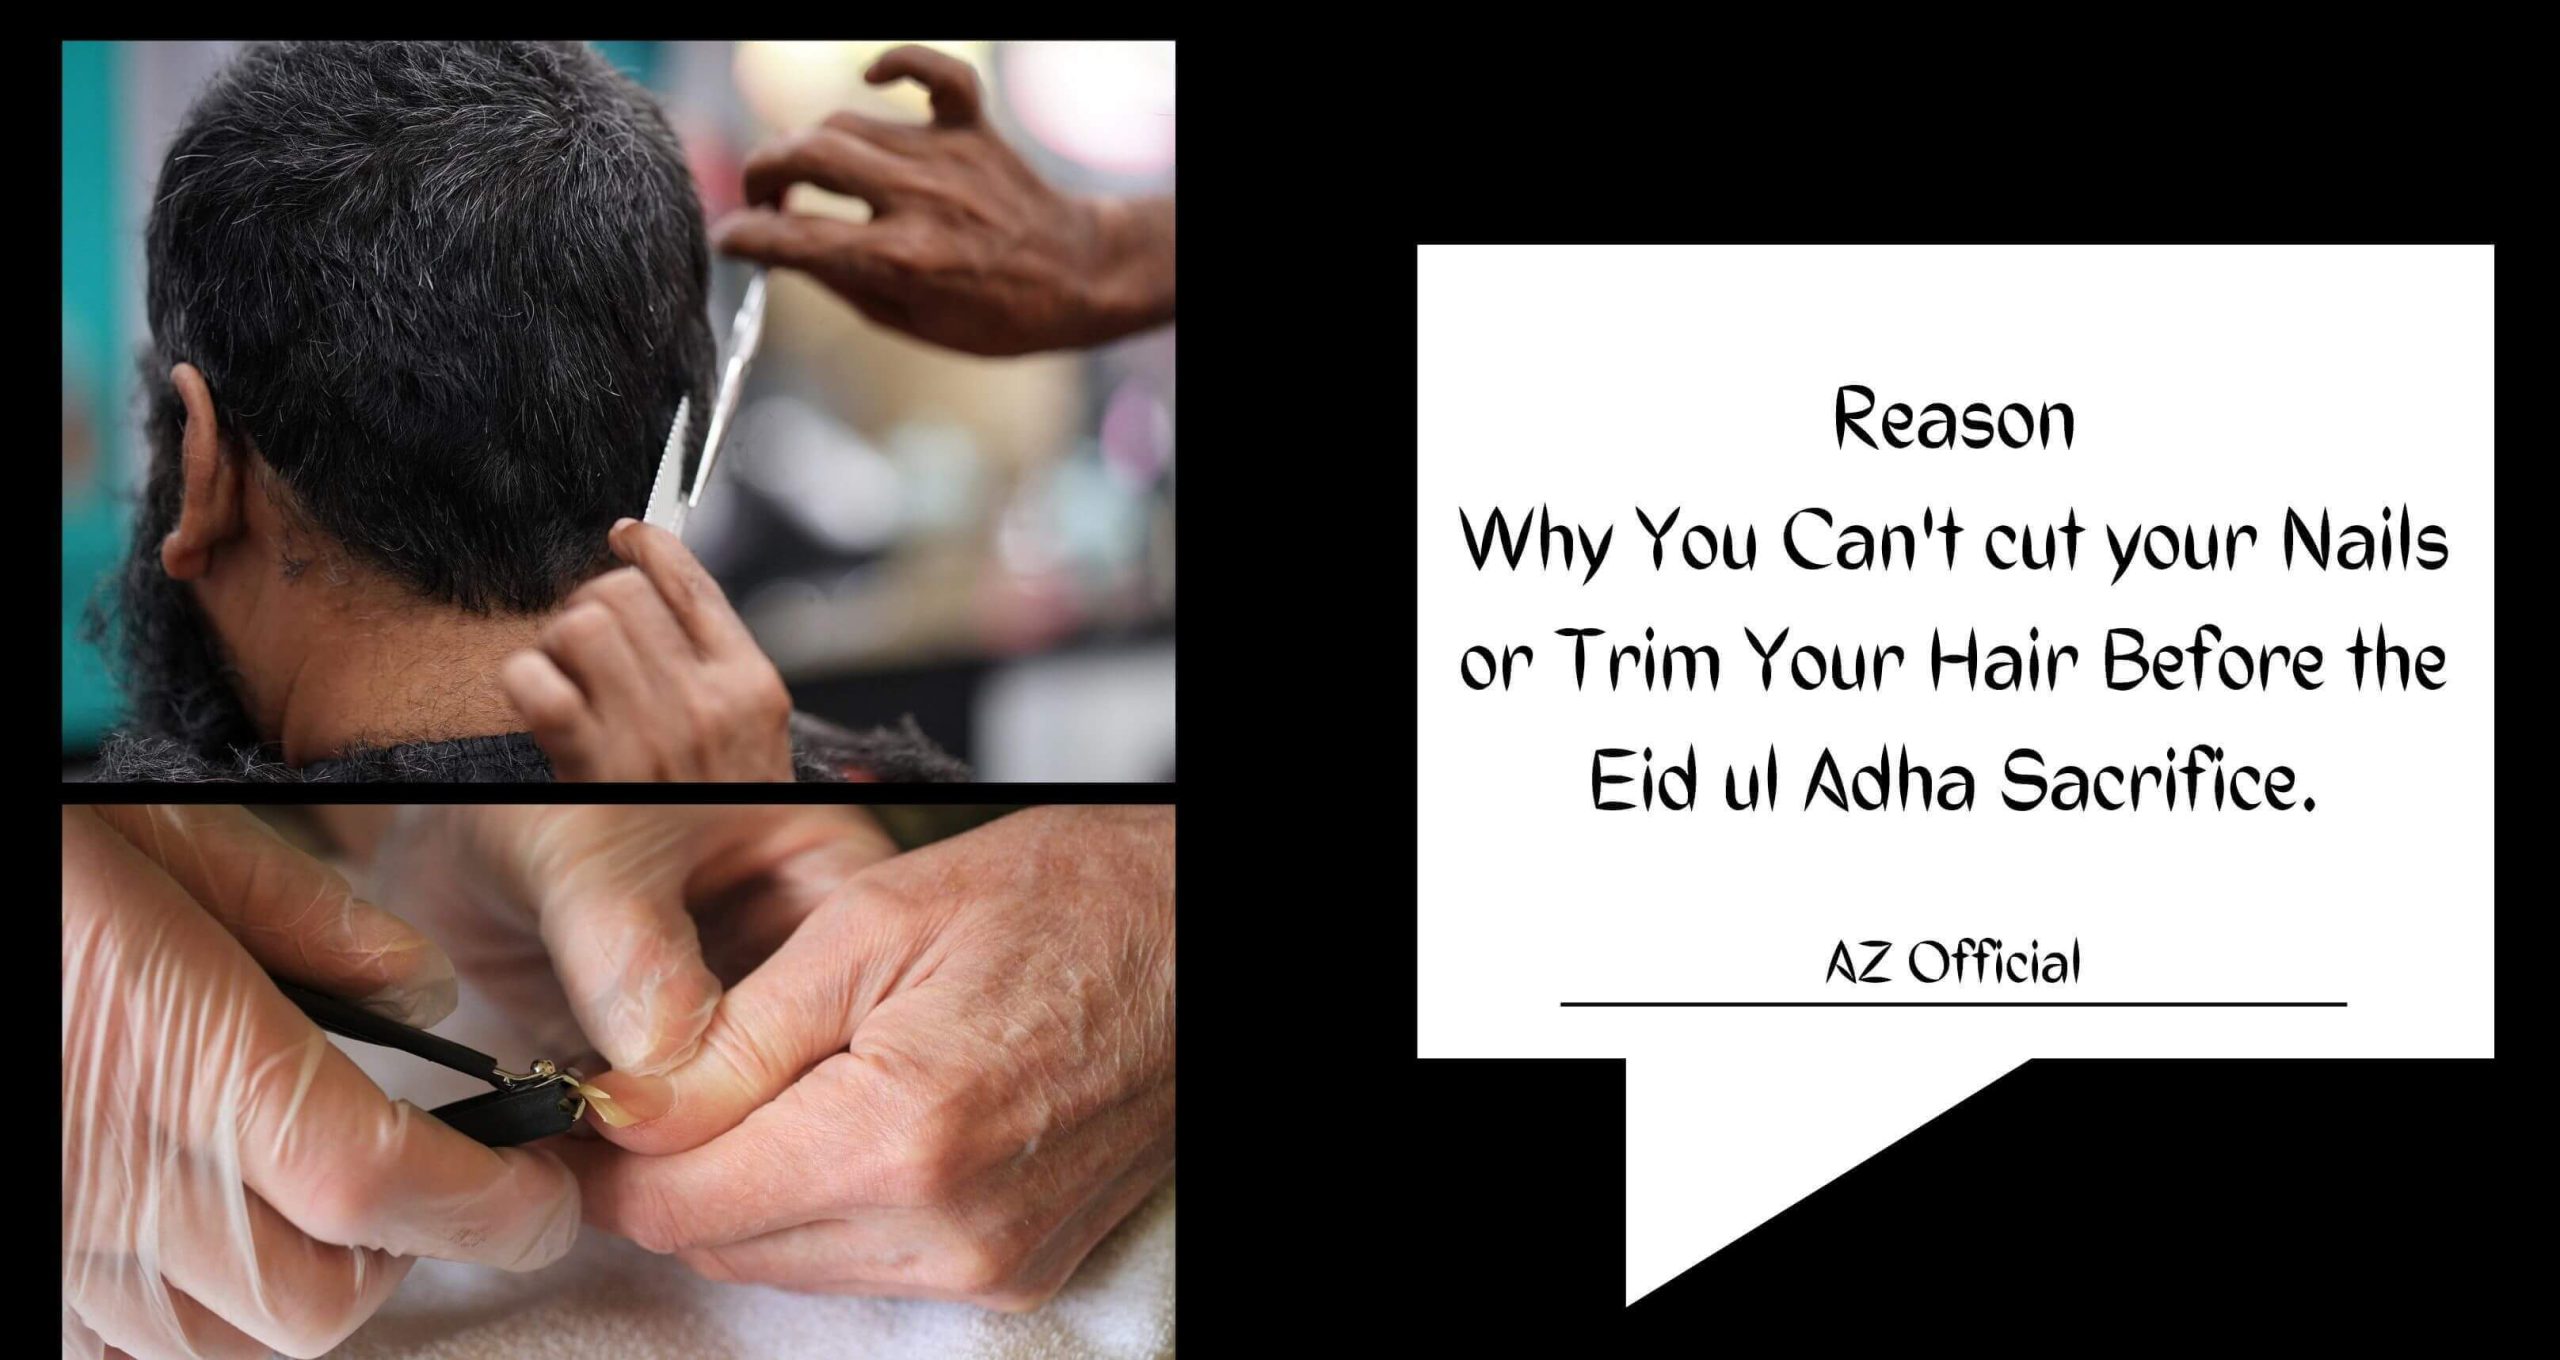 Hair and Nail Trimming Before Eid Ul Adha - Dhul Hijjah